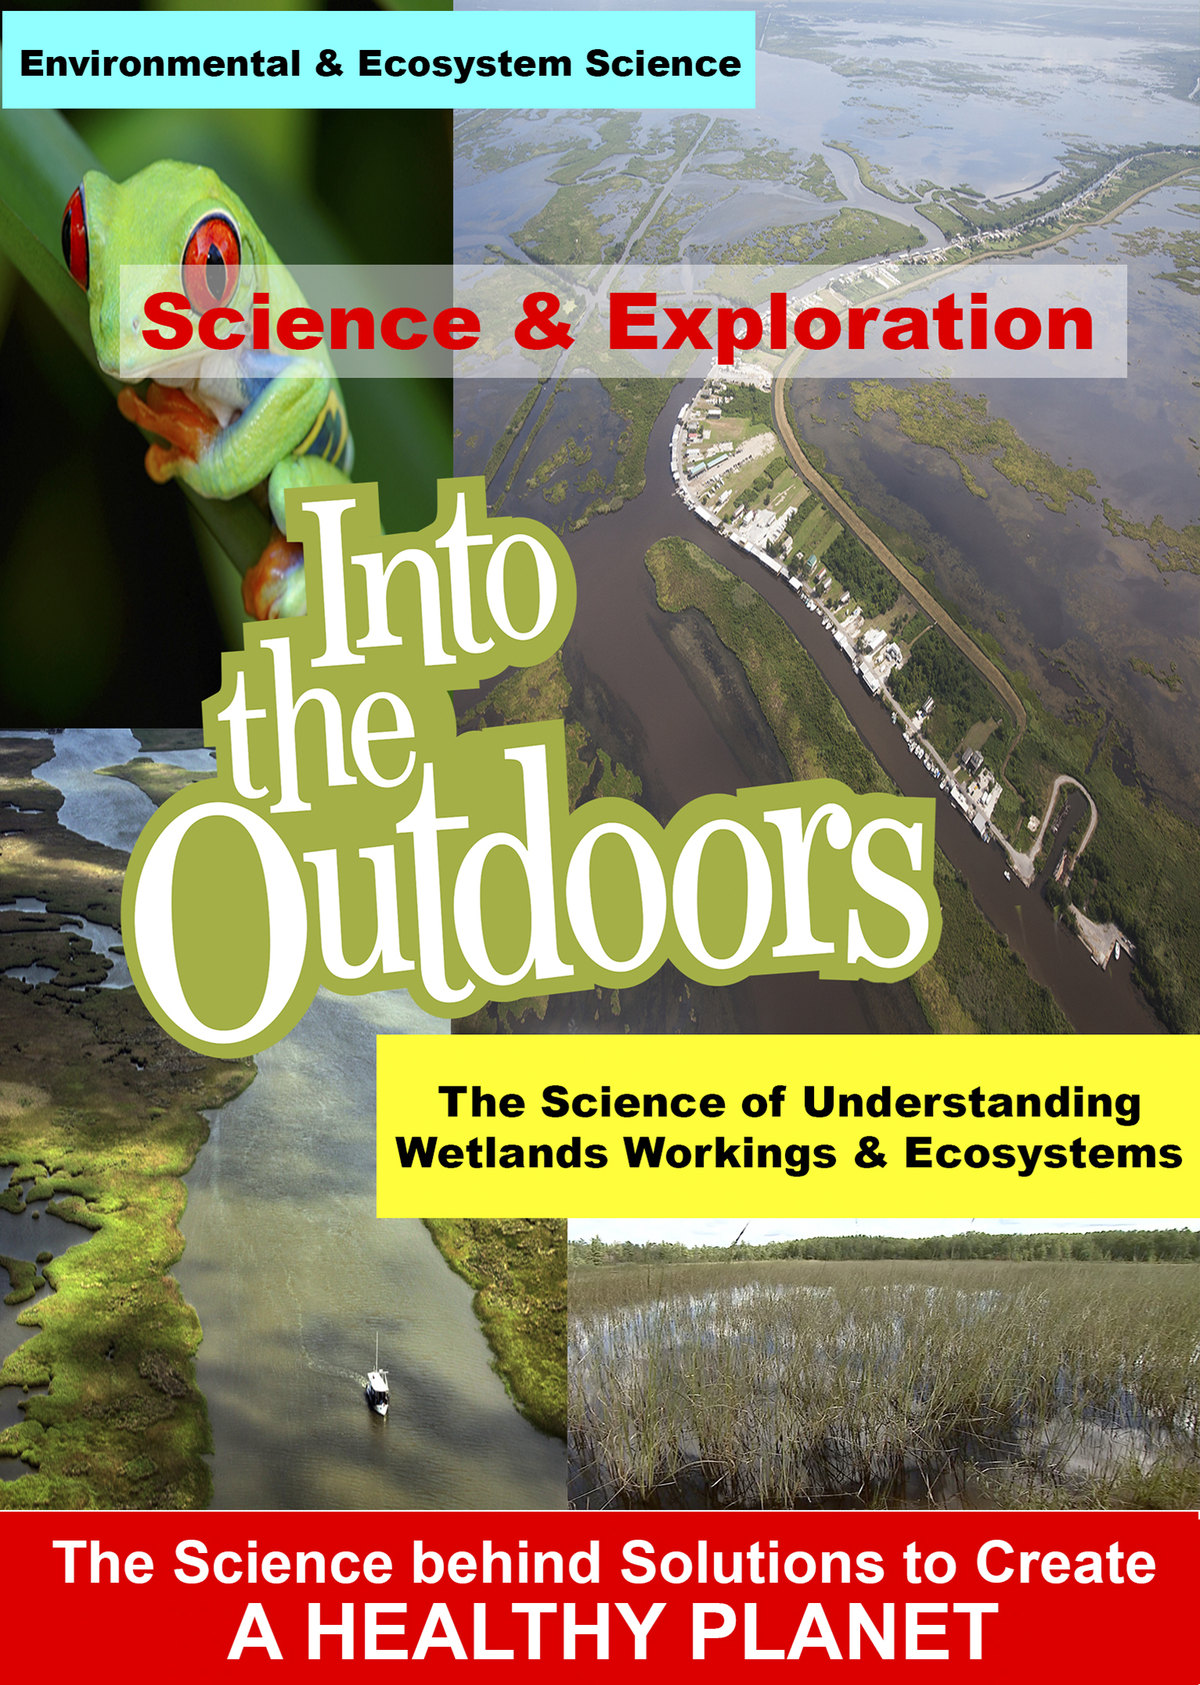 K4989 - The Science of Understanding Wetlands Workings & Ecosystems